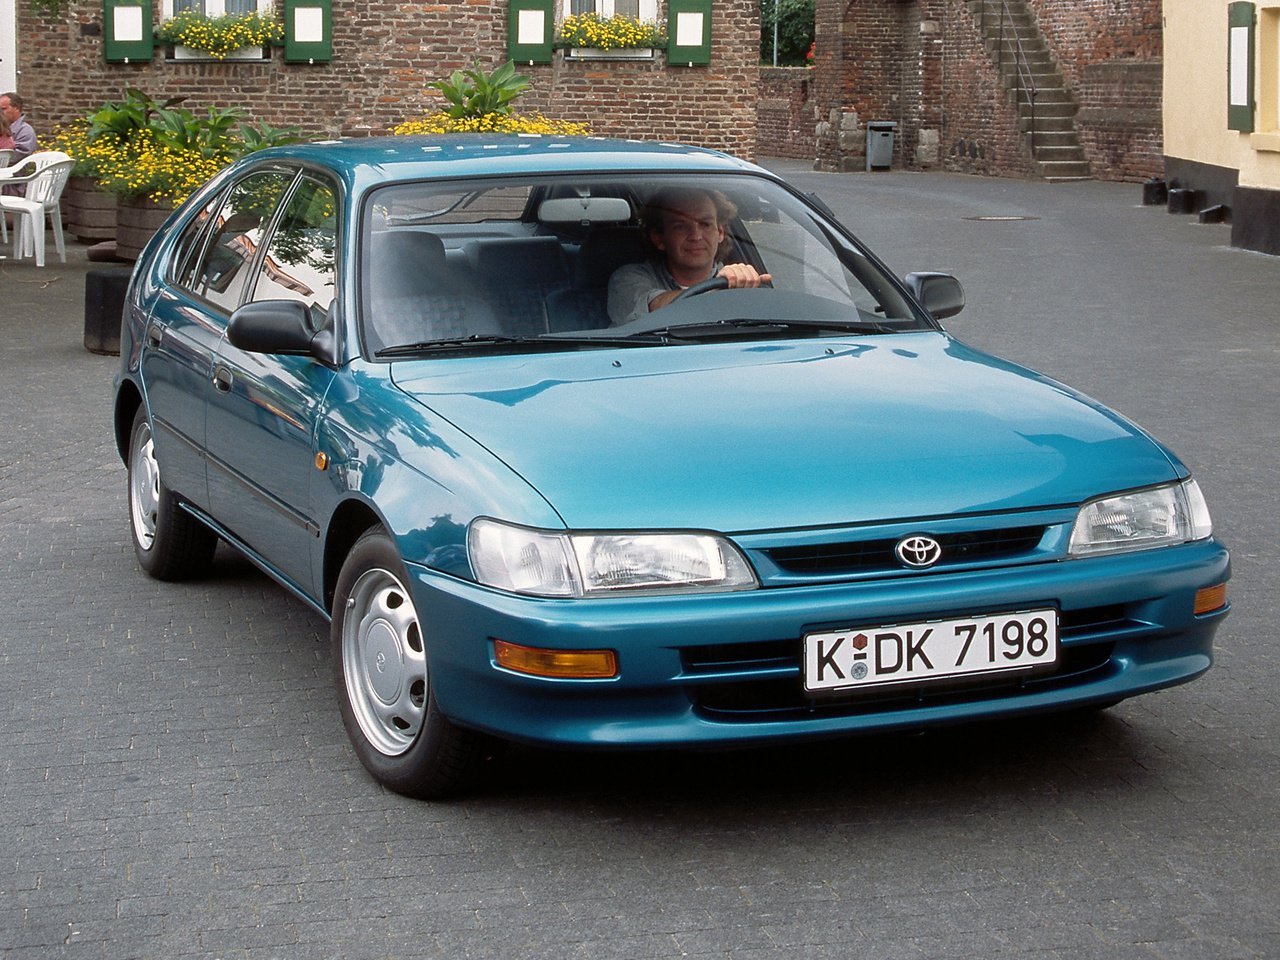 хэтчбек 5 дв. Toyota Corolla 1991 - 1997г выпуска модификация 1.3 AT (75 л.с.)